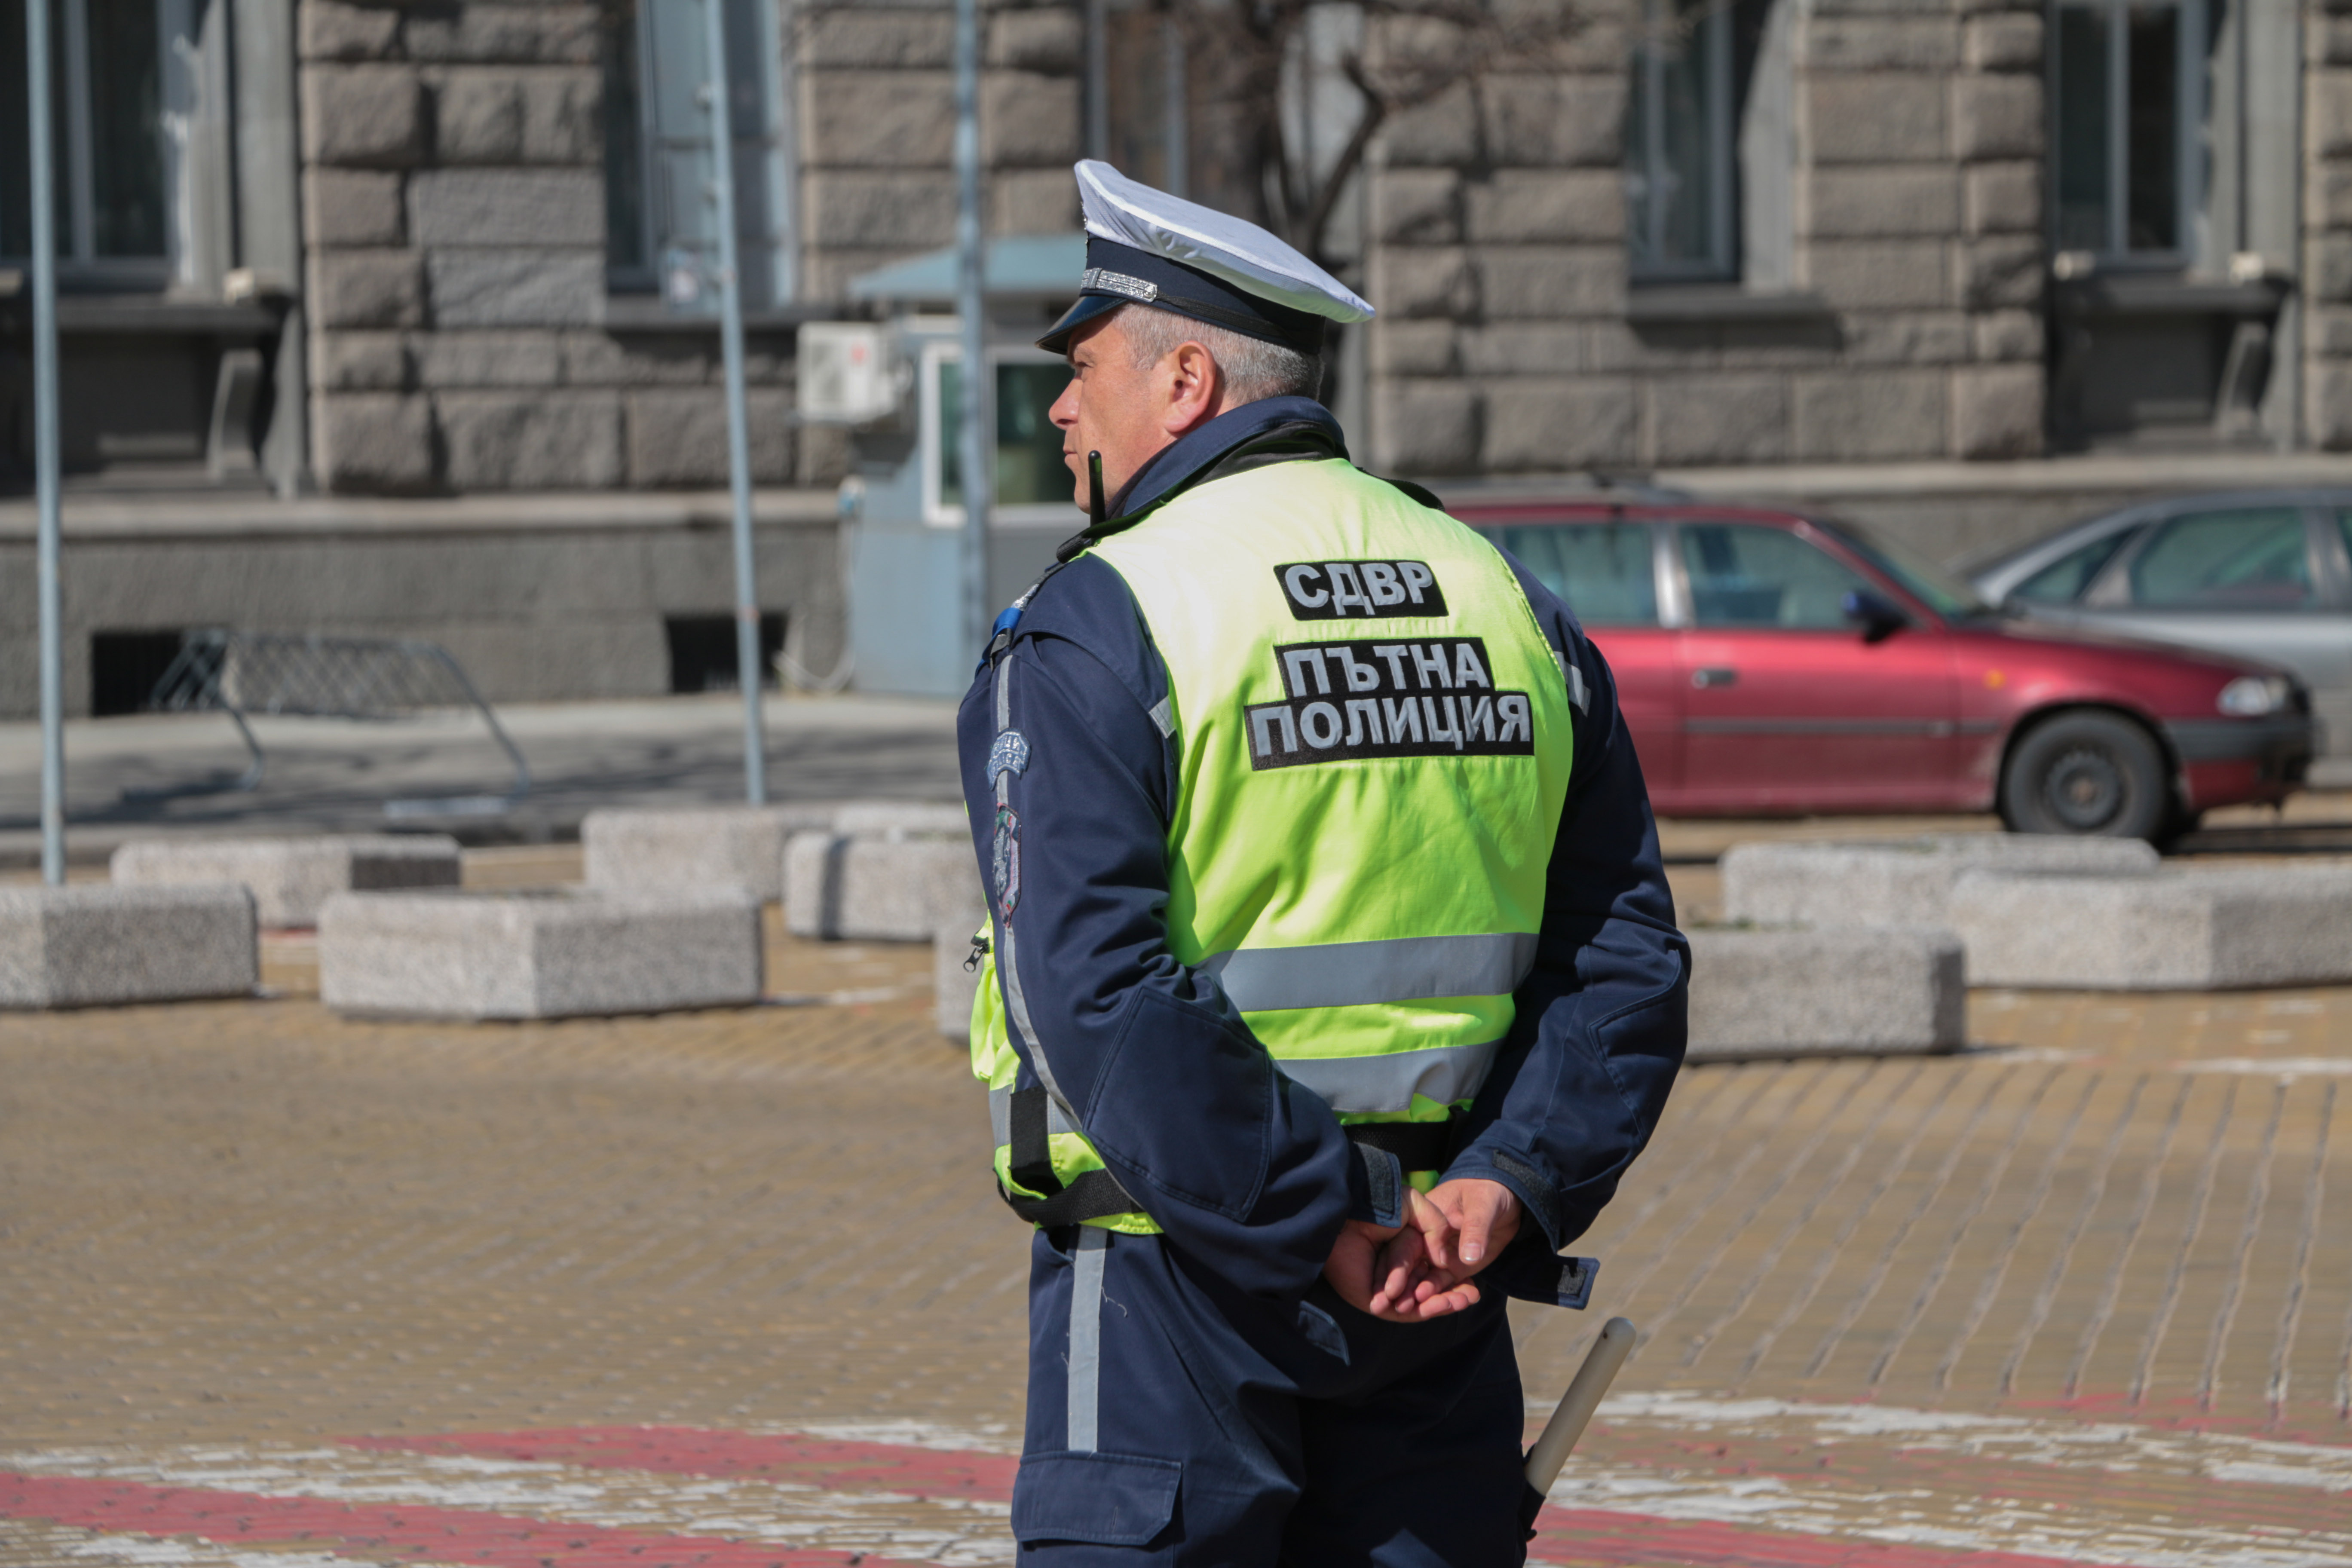 Най-много нарушения на ограниченията за скорост са засечени в София